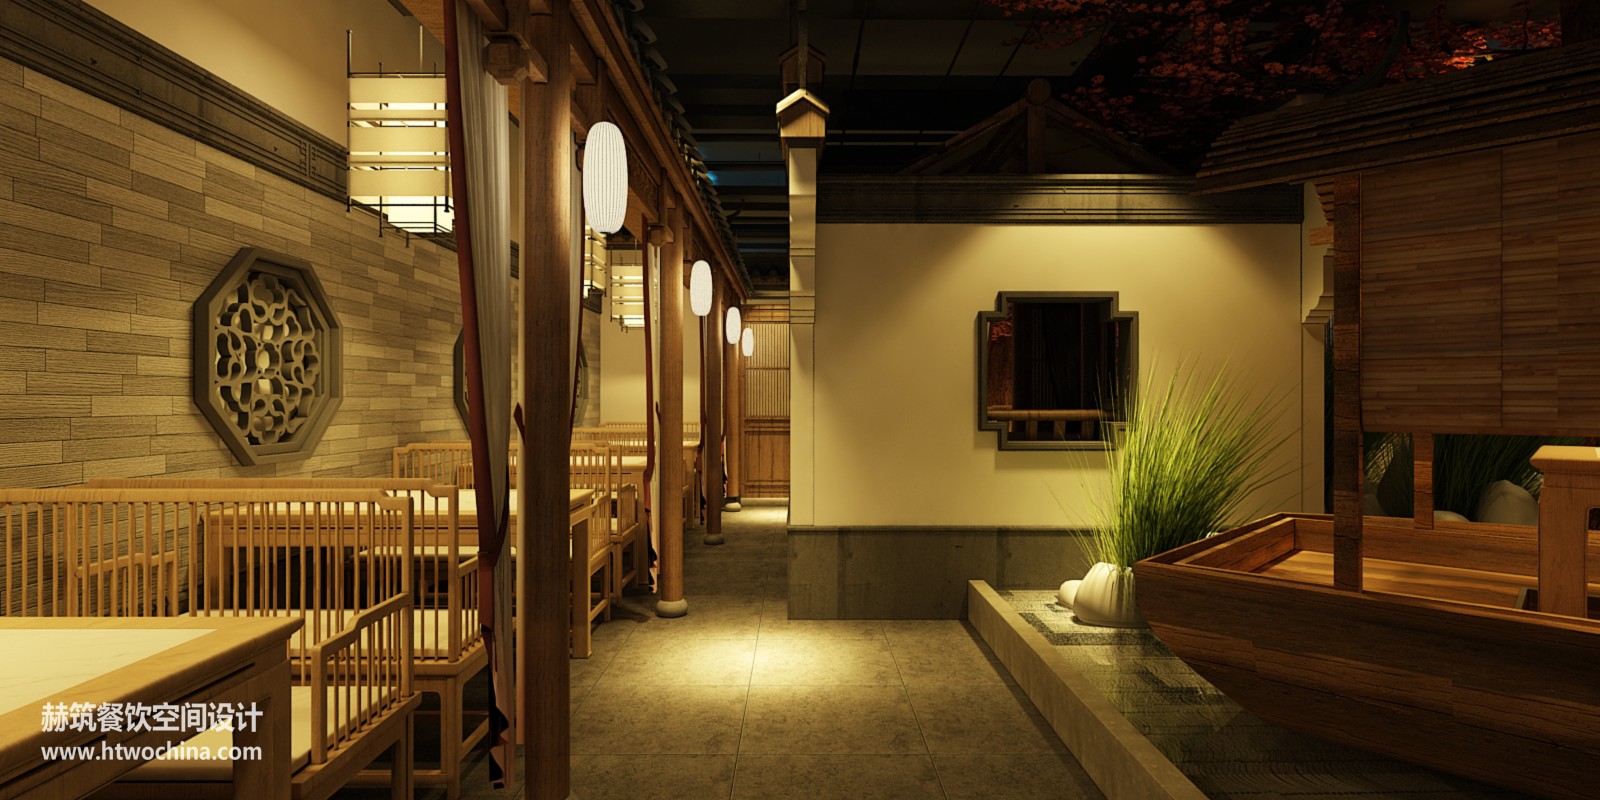 暗恋桃花源龙之梦店-中餐厅设计-上海赫筑餐饮空间设计事务所